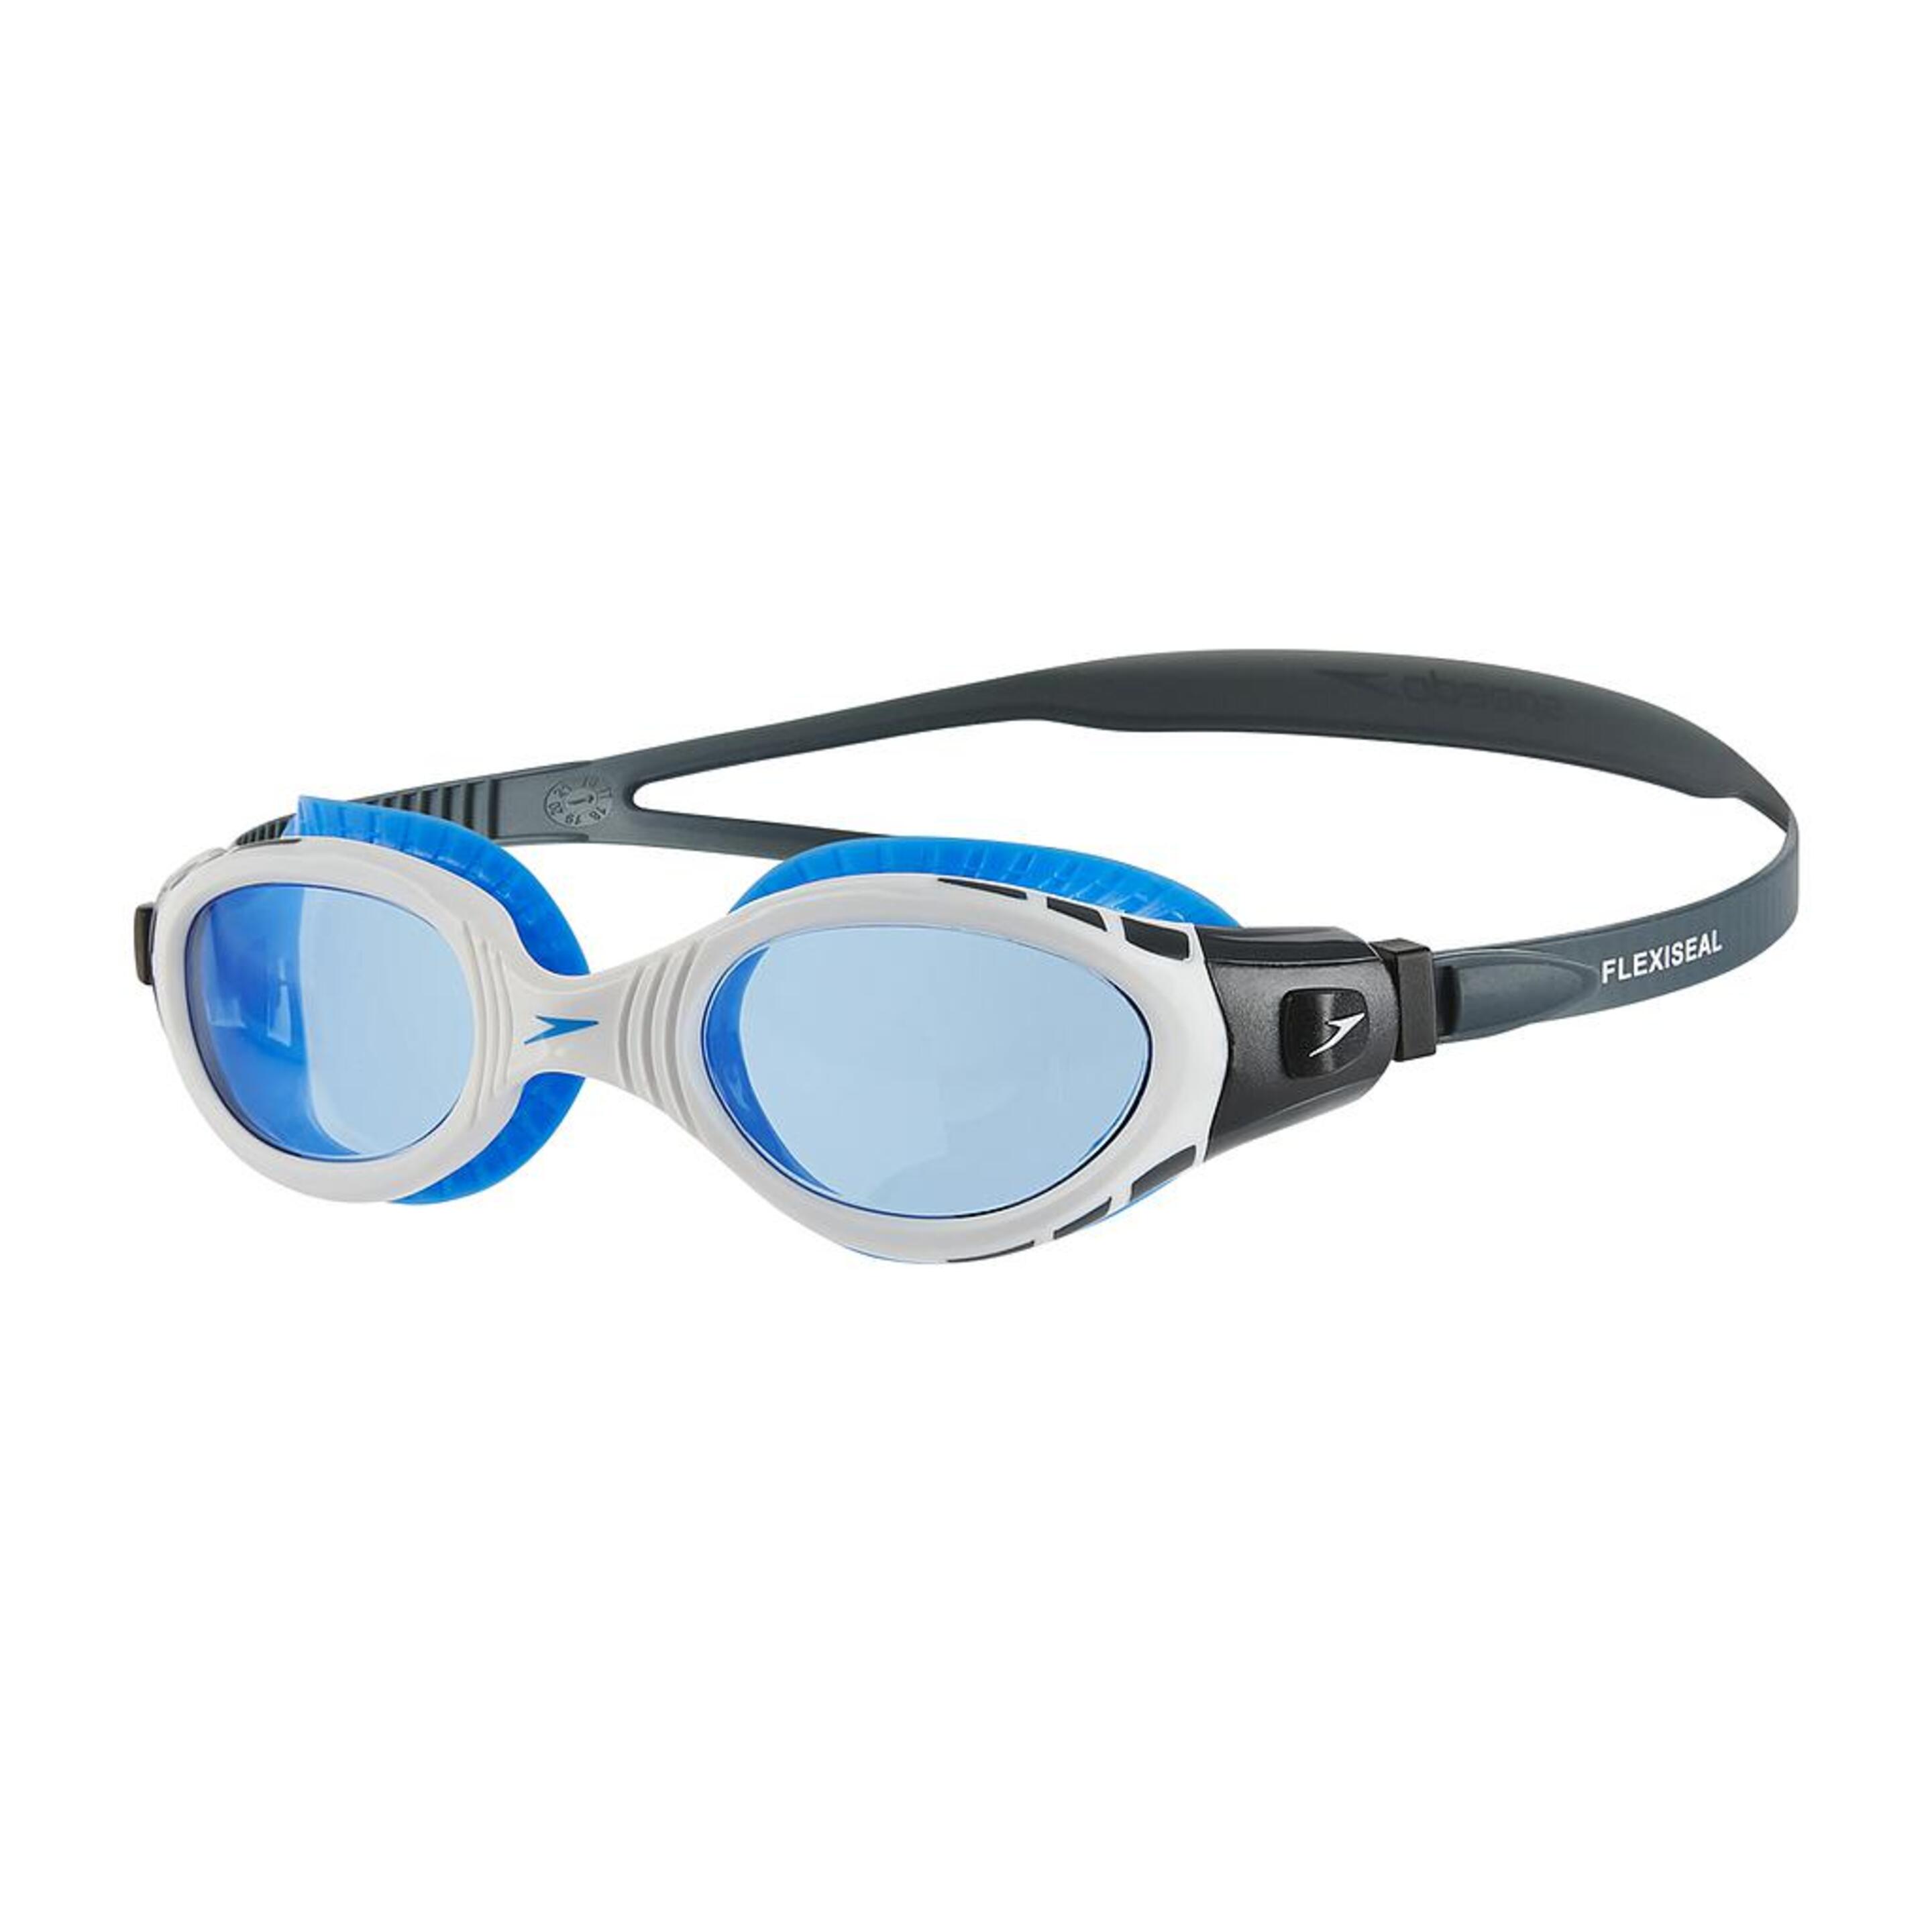 Gafas De Natación Futura Biofuse Flexiseal Speedo - azul - 